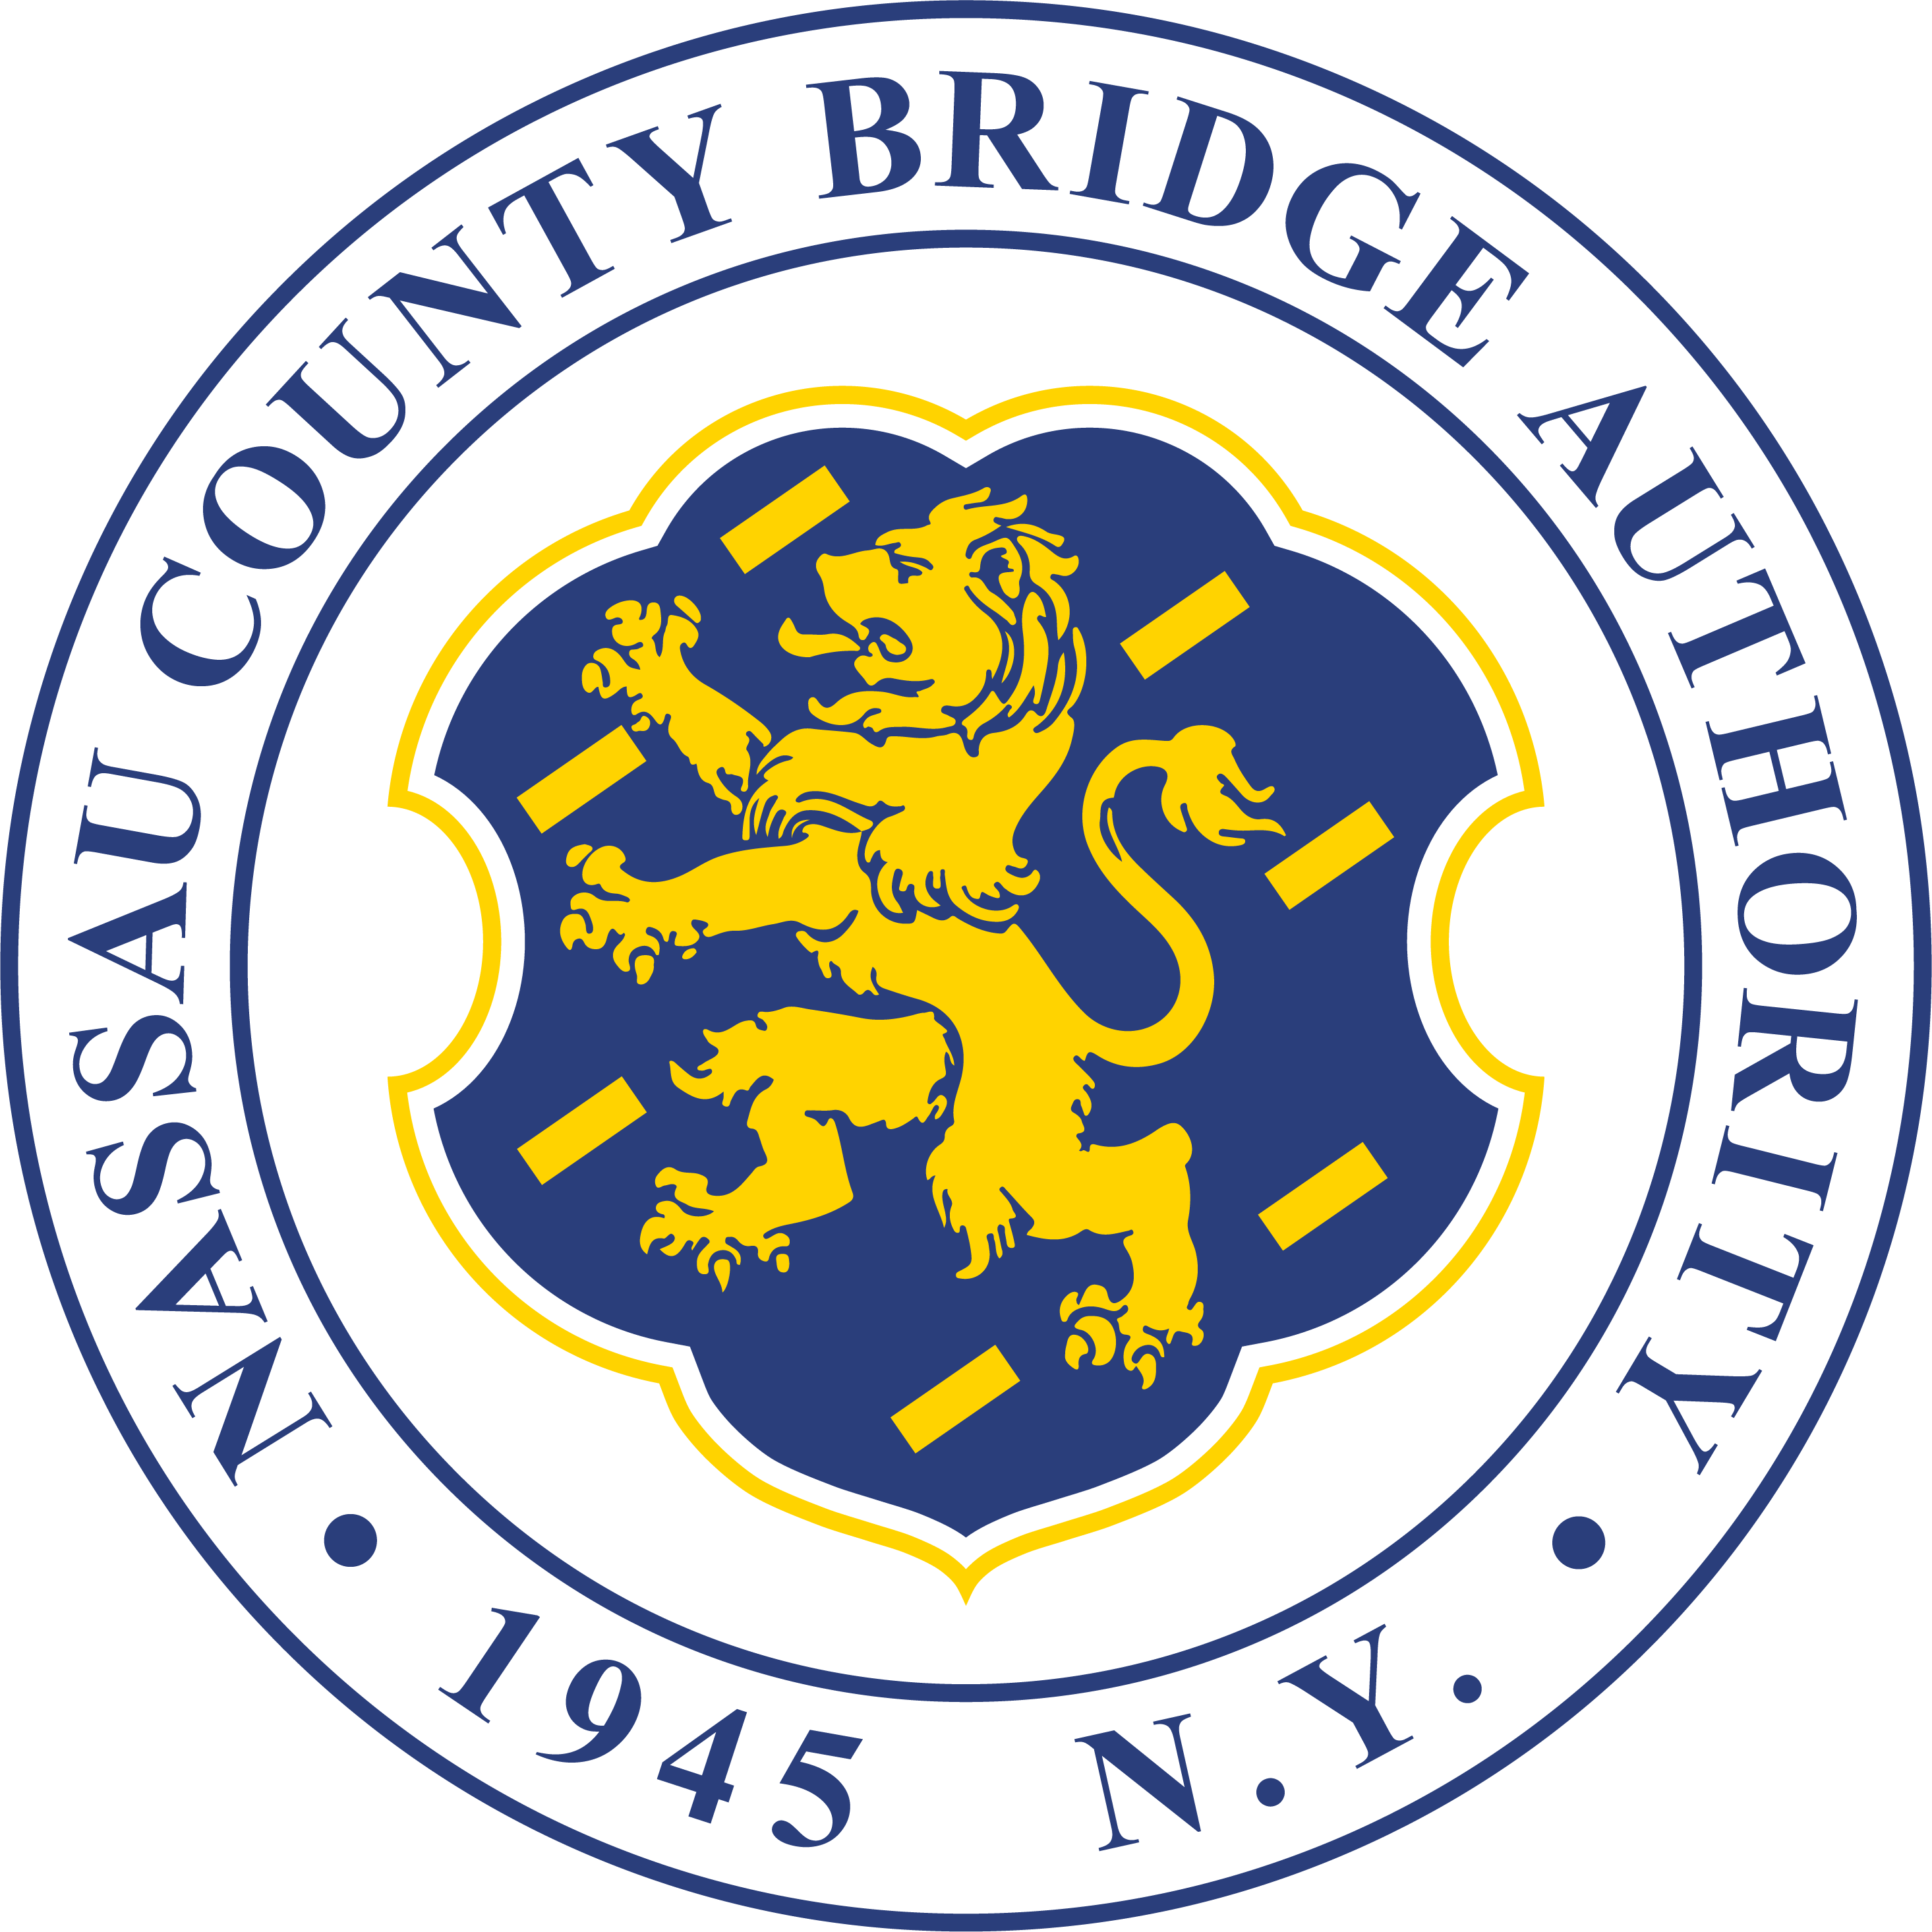 Nassau County Bridge Authority